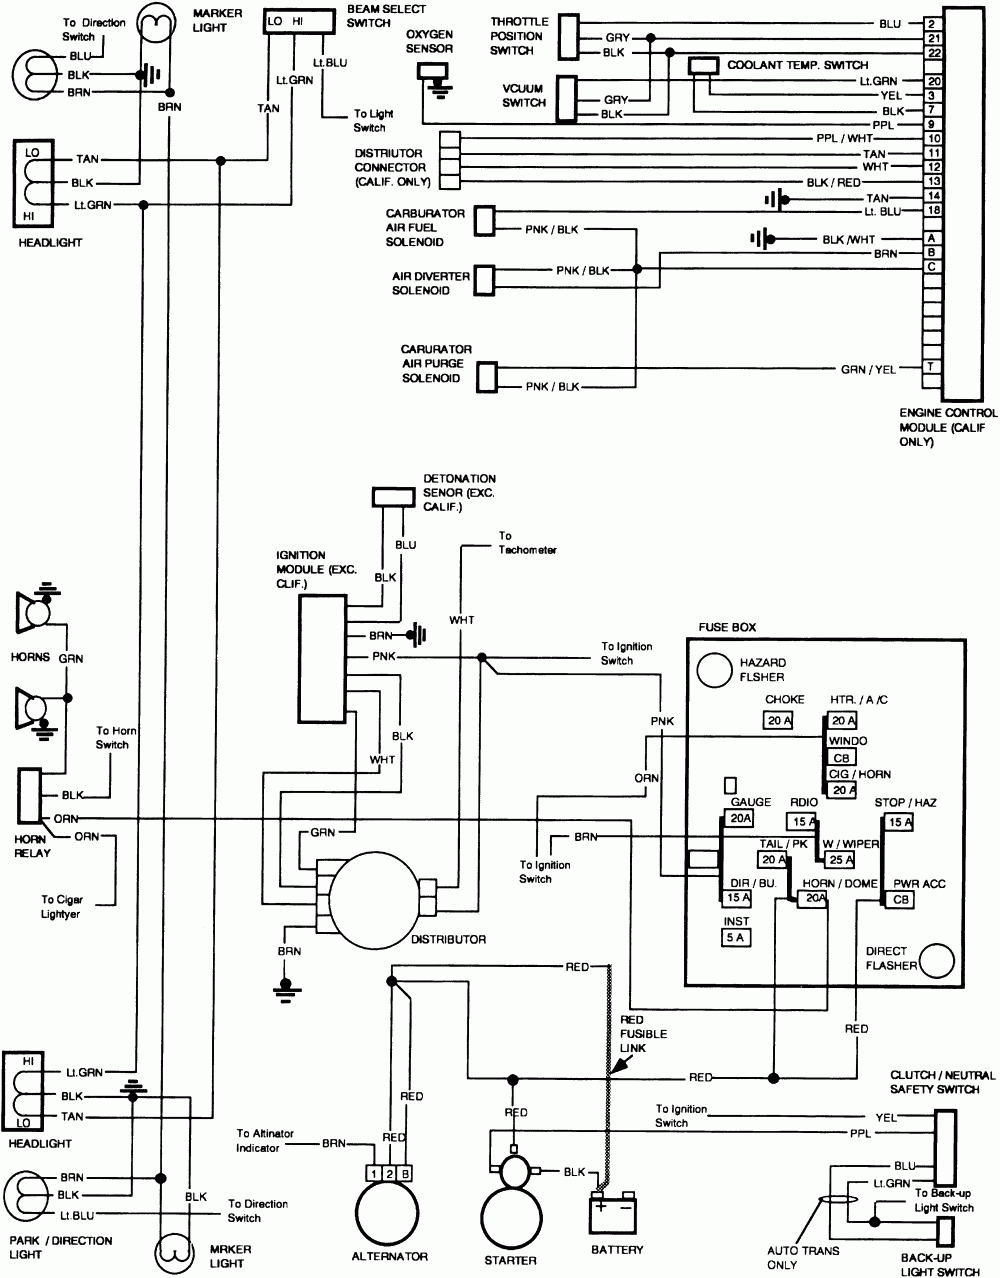 Free Wiring Diagram 1991 Gmc Sierra | Wiring Schematic For 83 K10 - 1991 Chevy Truck Wiring Diagram